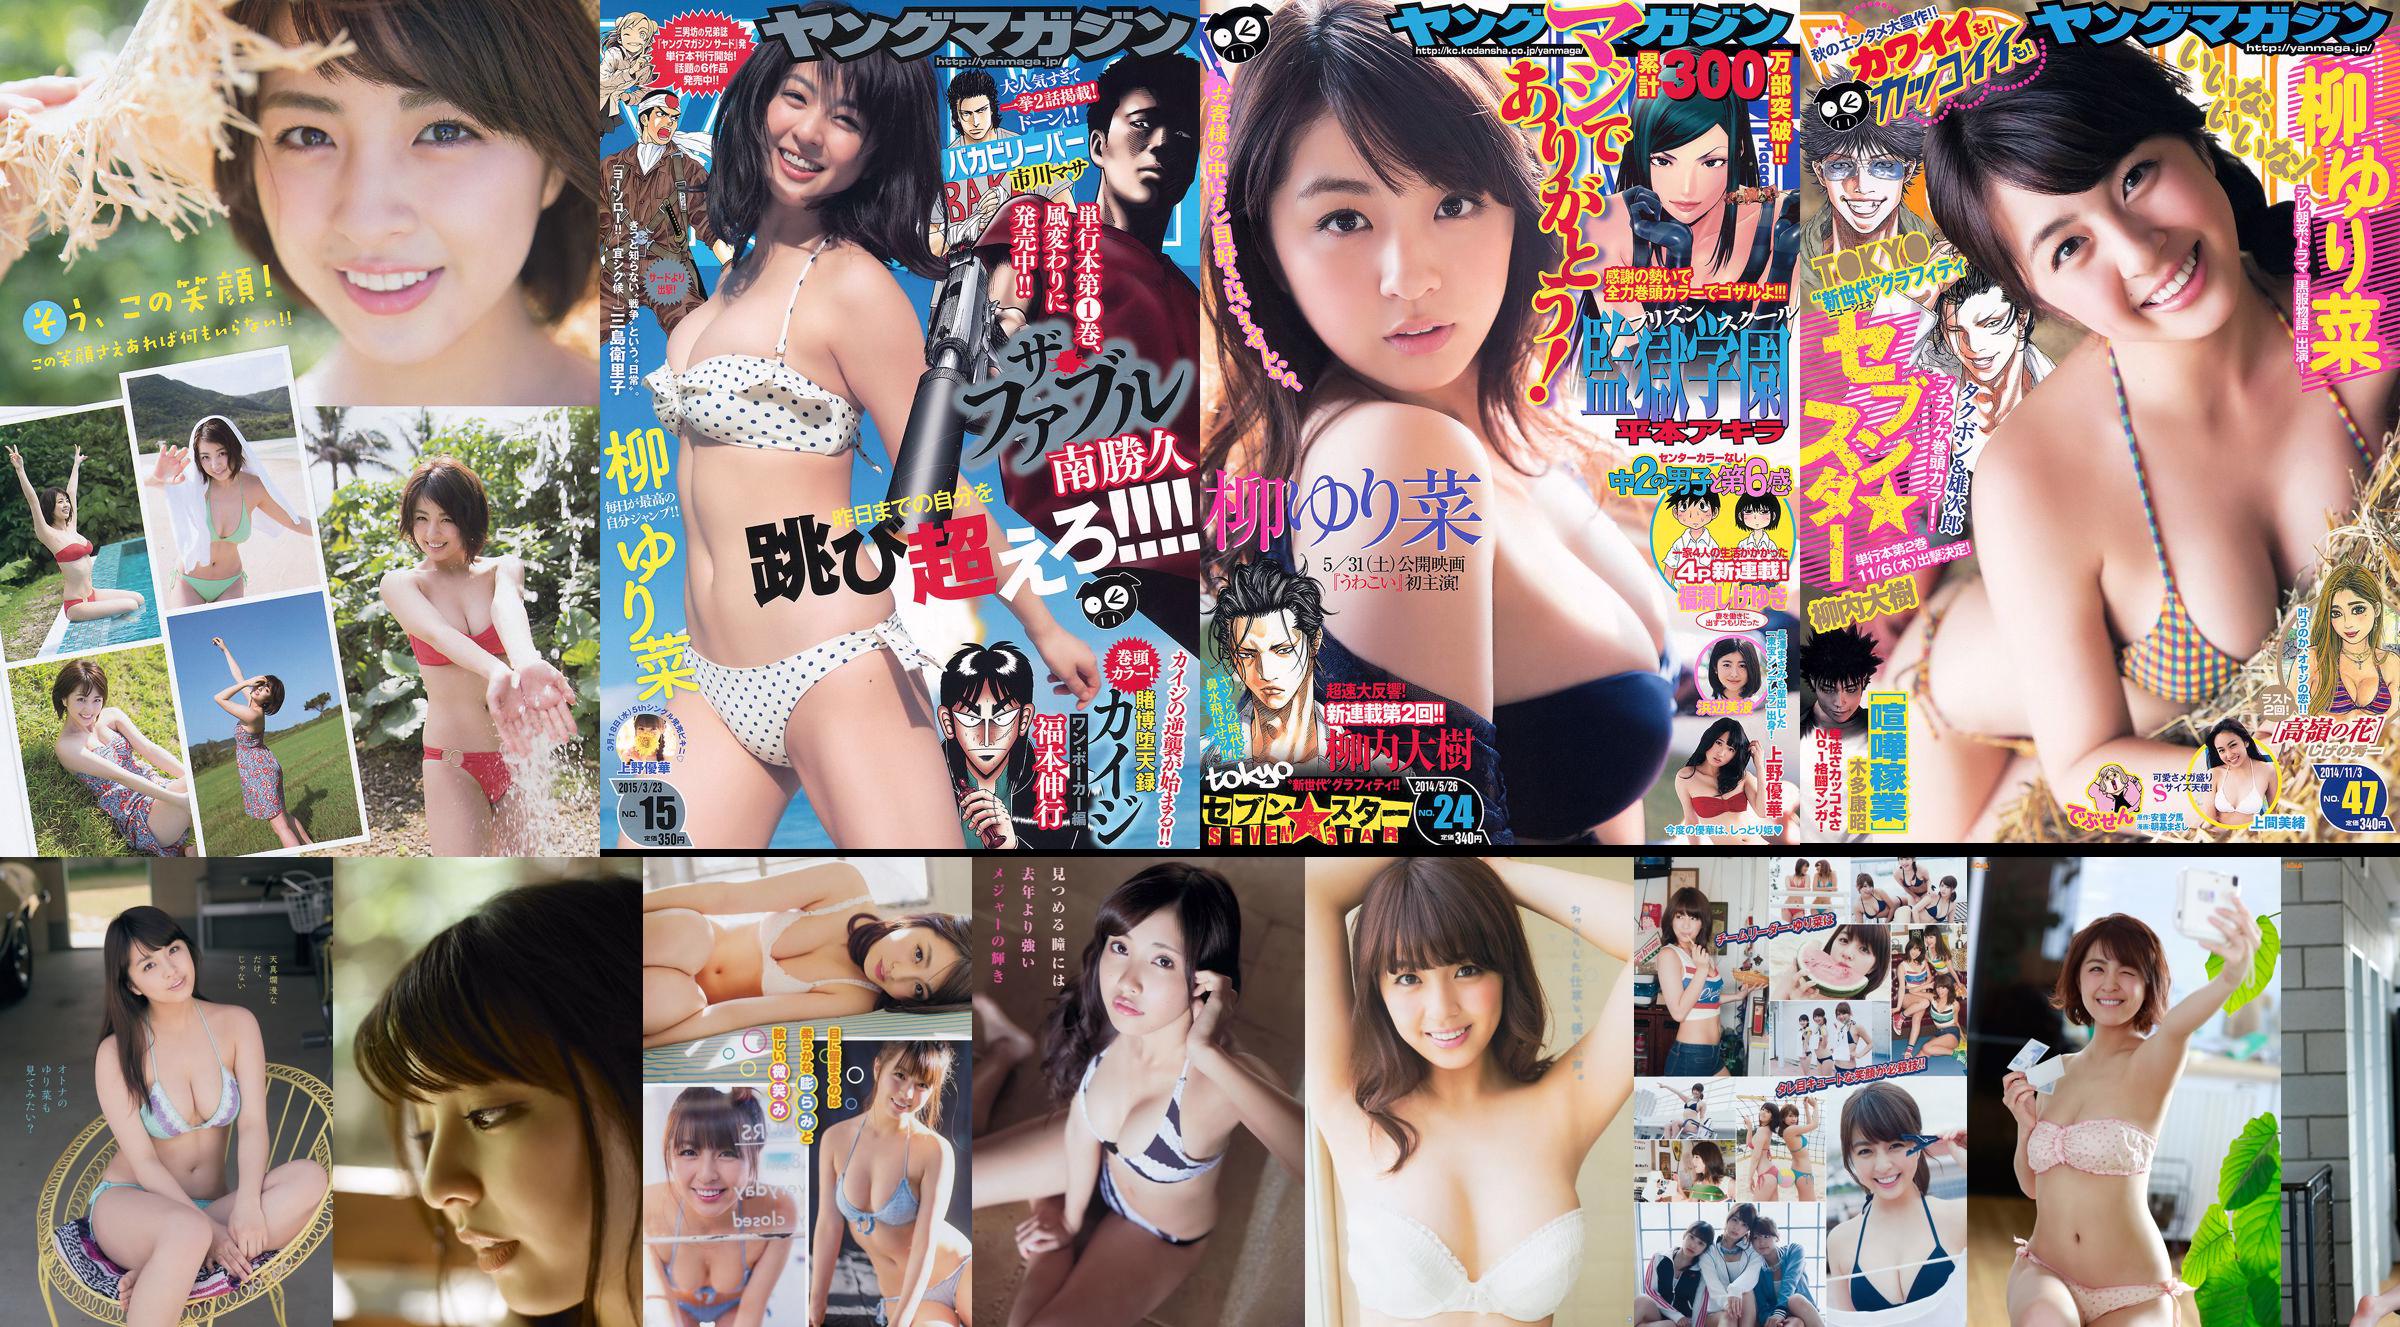 [Young Magazine] Yurina Yanagi Ikumi Hisamatsu Sayaka Tomaru 2015 No.30 Photograph No.3903d4 Page 1